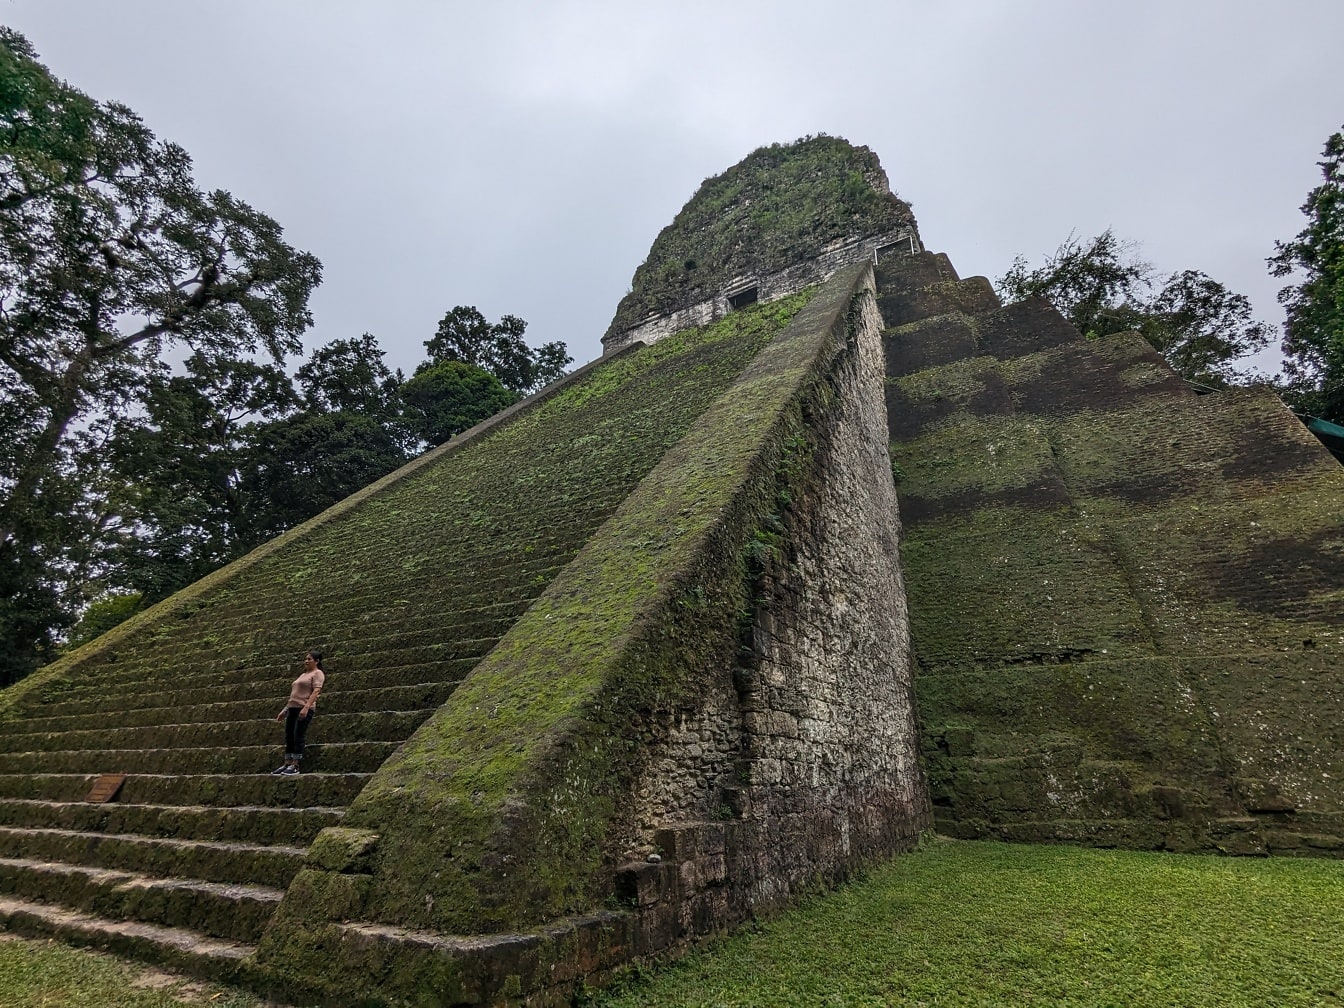 Pessoa em pé em uma escadaria de pedra da pirâmide V do templo de Tikal na Guatemala